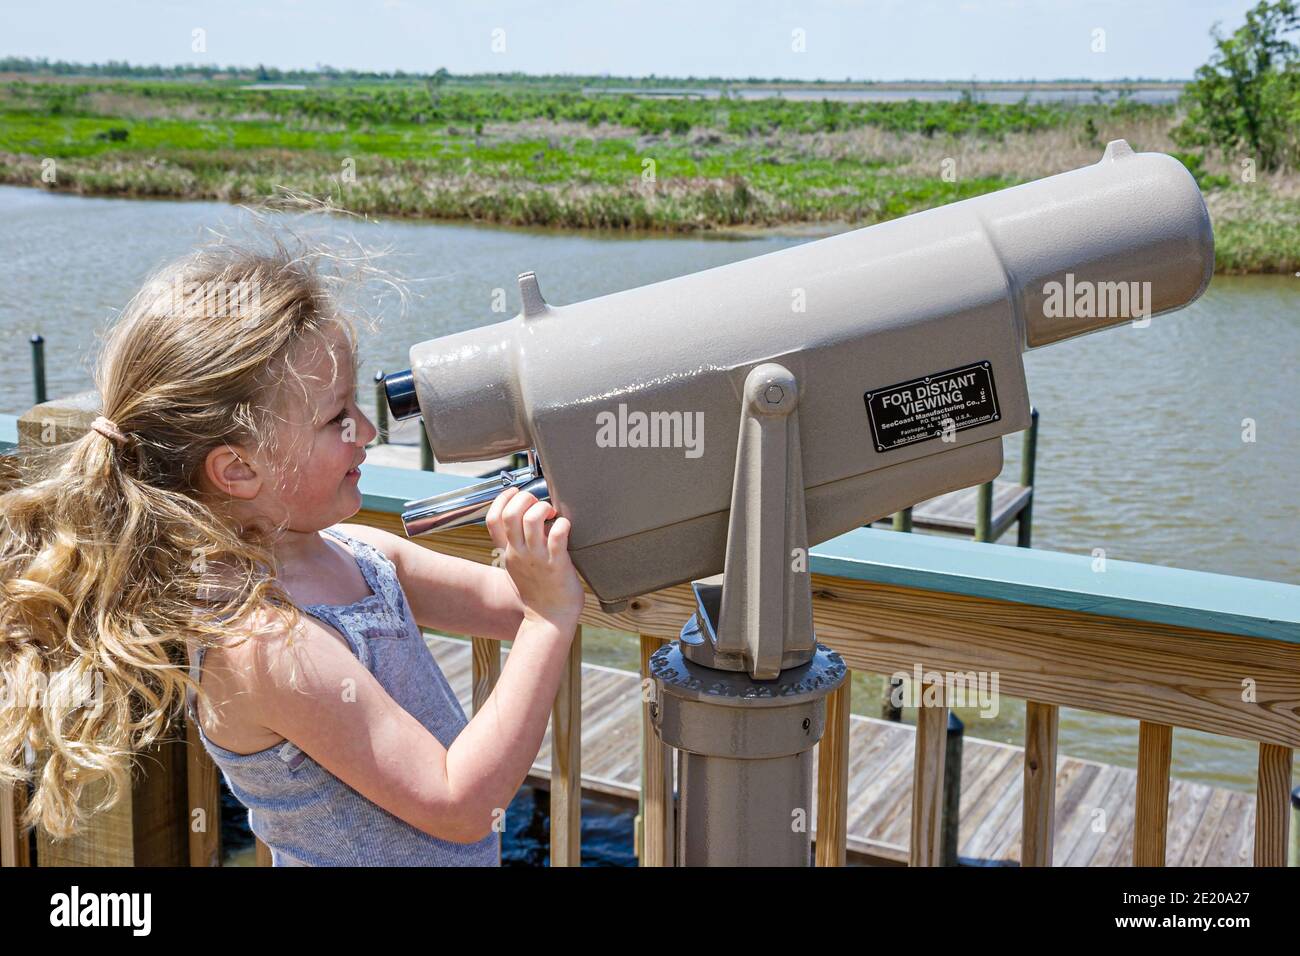 Alabama Spanish Fort 5 Flussgebiete Alabama Delta Resource Center Center, Mädchen, die durch Teleskopausleger schauen Mobile Bay Feuchtgebiete, Stockfoto